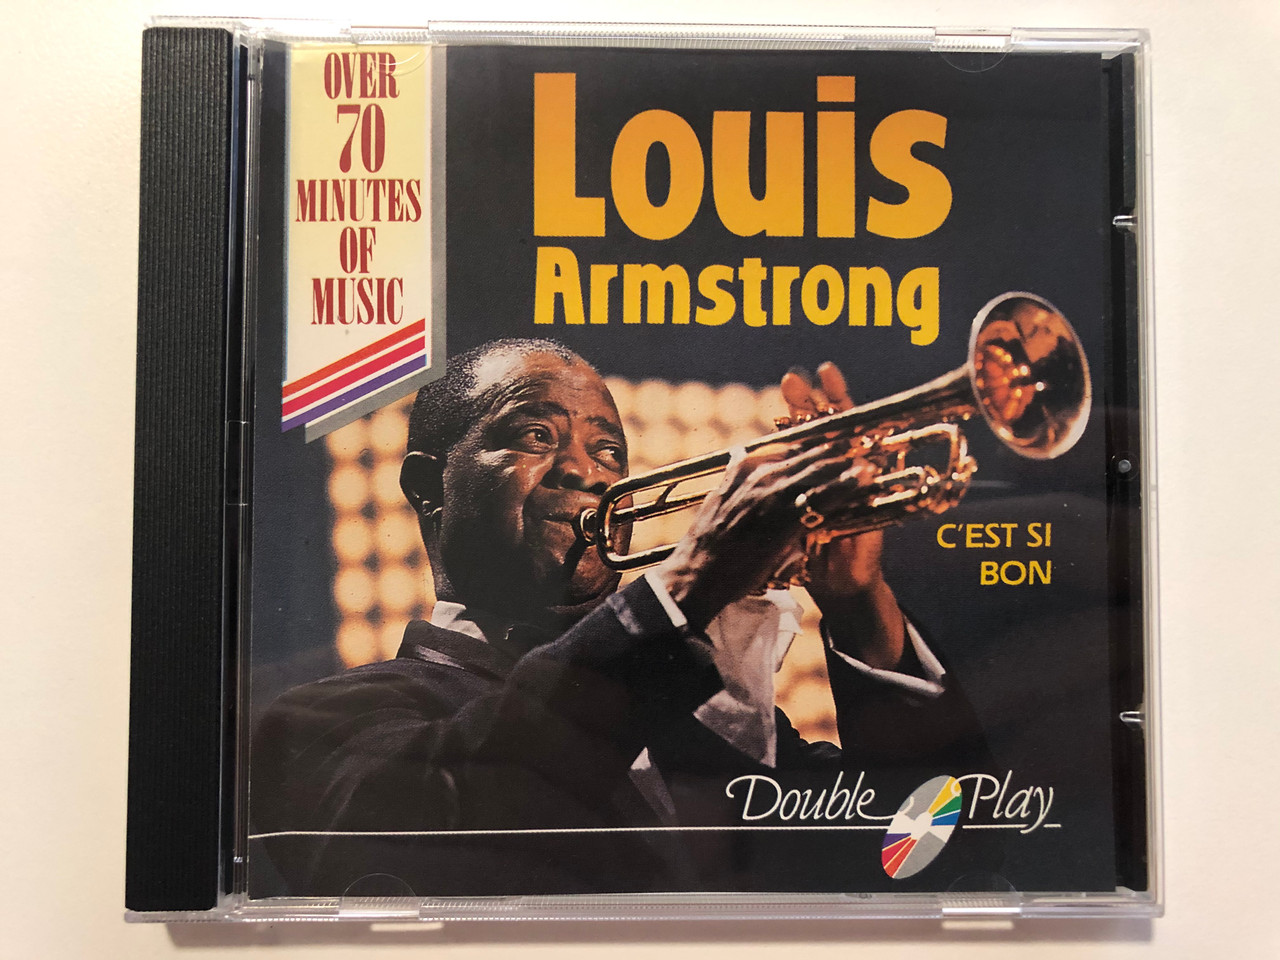 Uregelmæssigheder Sobriquette præst Louis Armstrong – C'Est Si Bon / Over 70 Minutes Of Music / Double Play  Audio CD / GRF036 - bibleinmylanguage